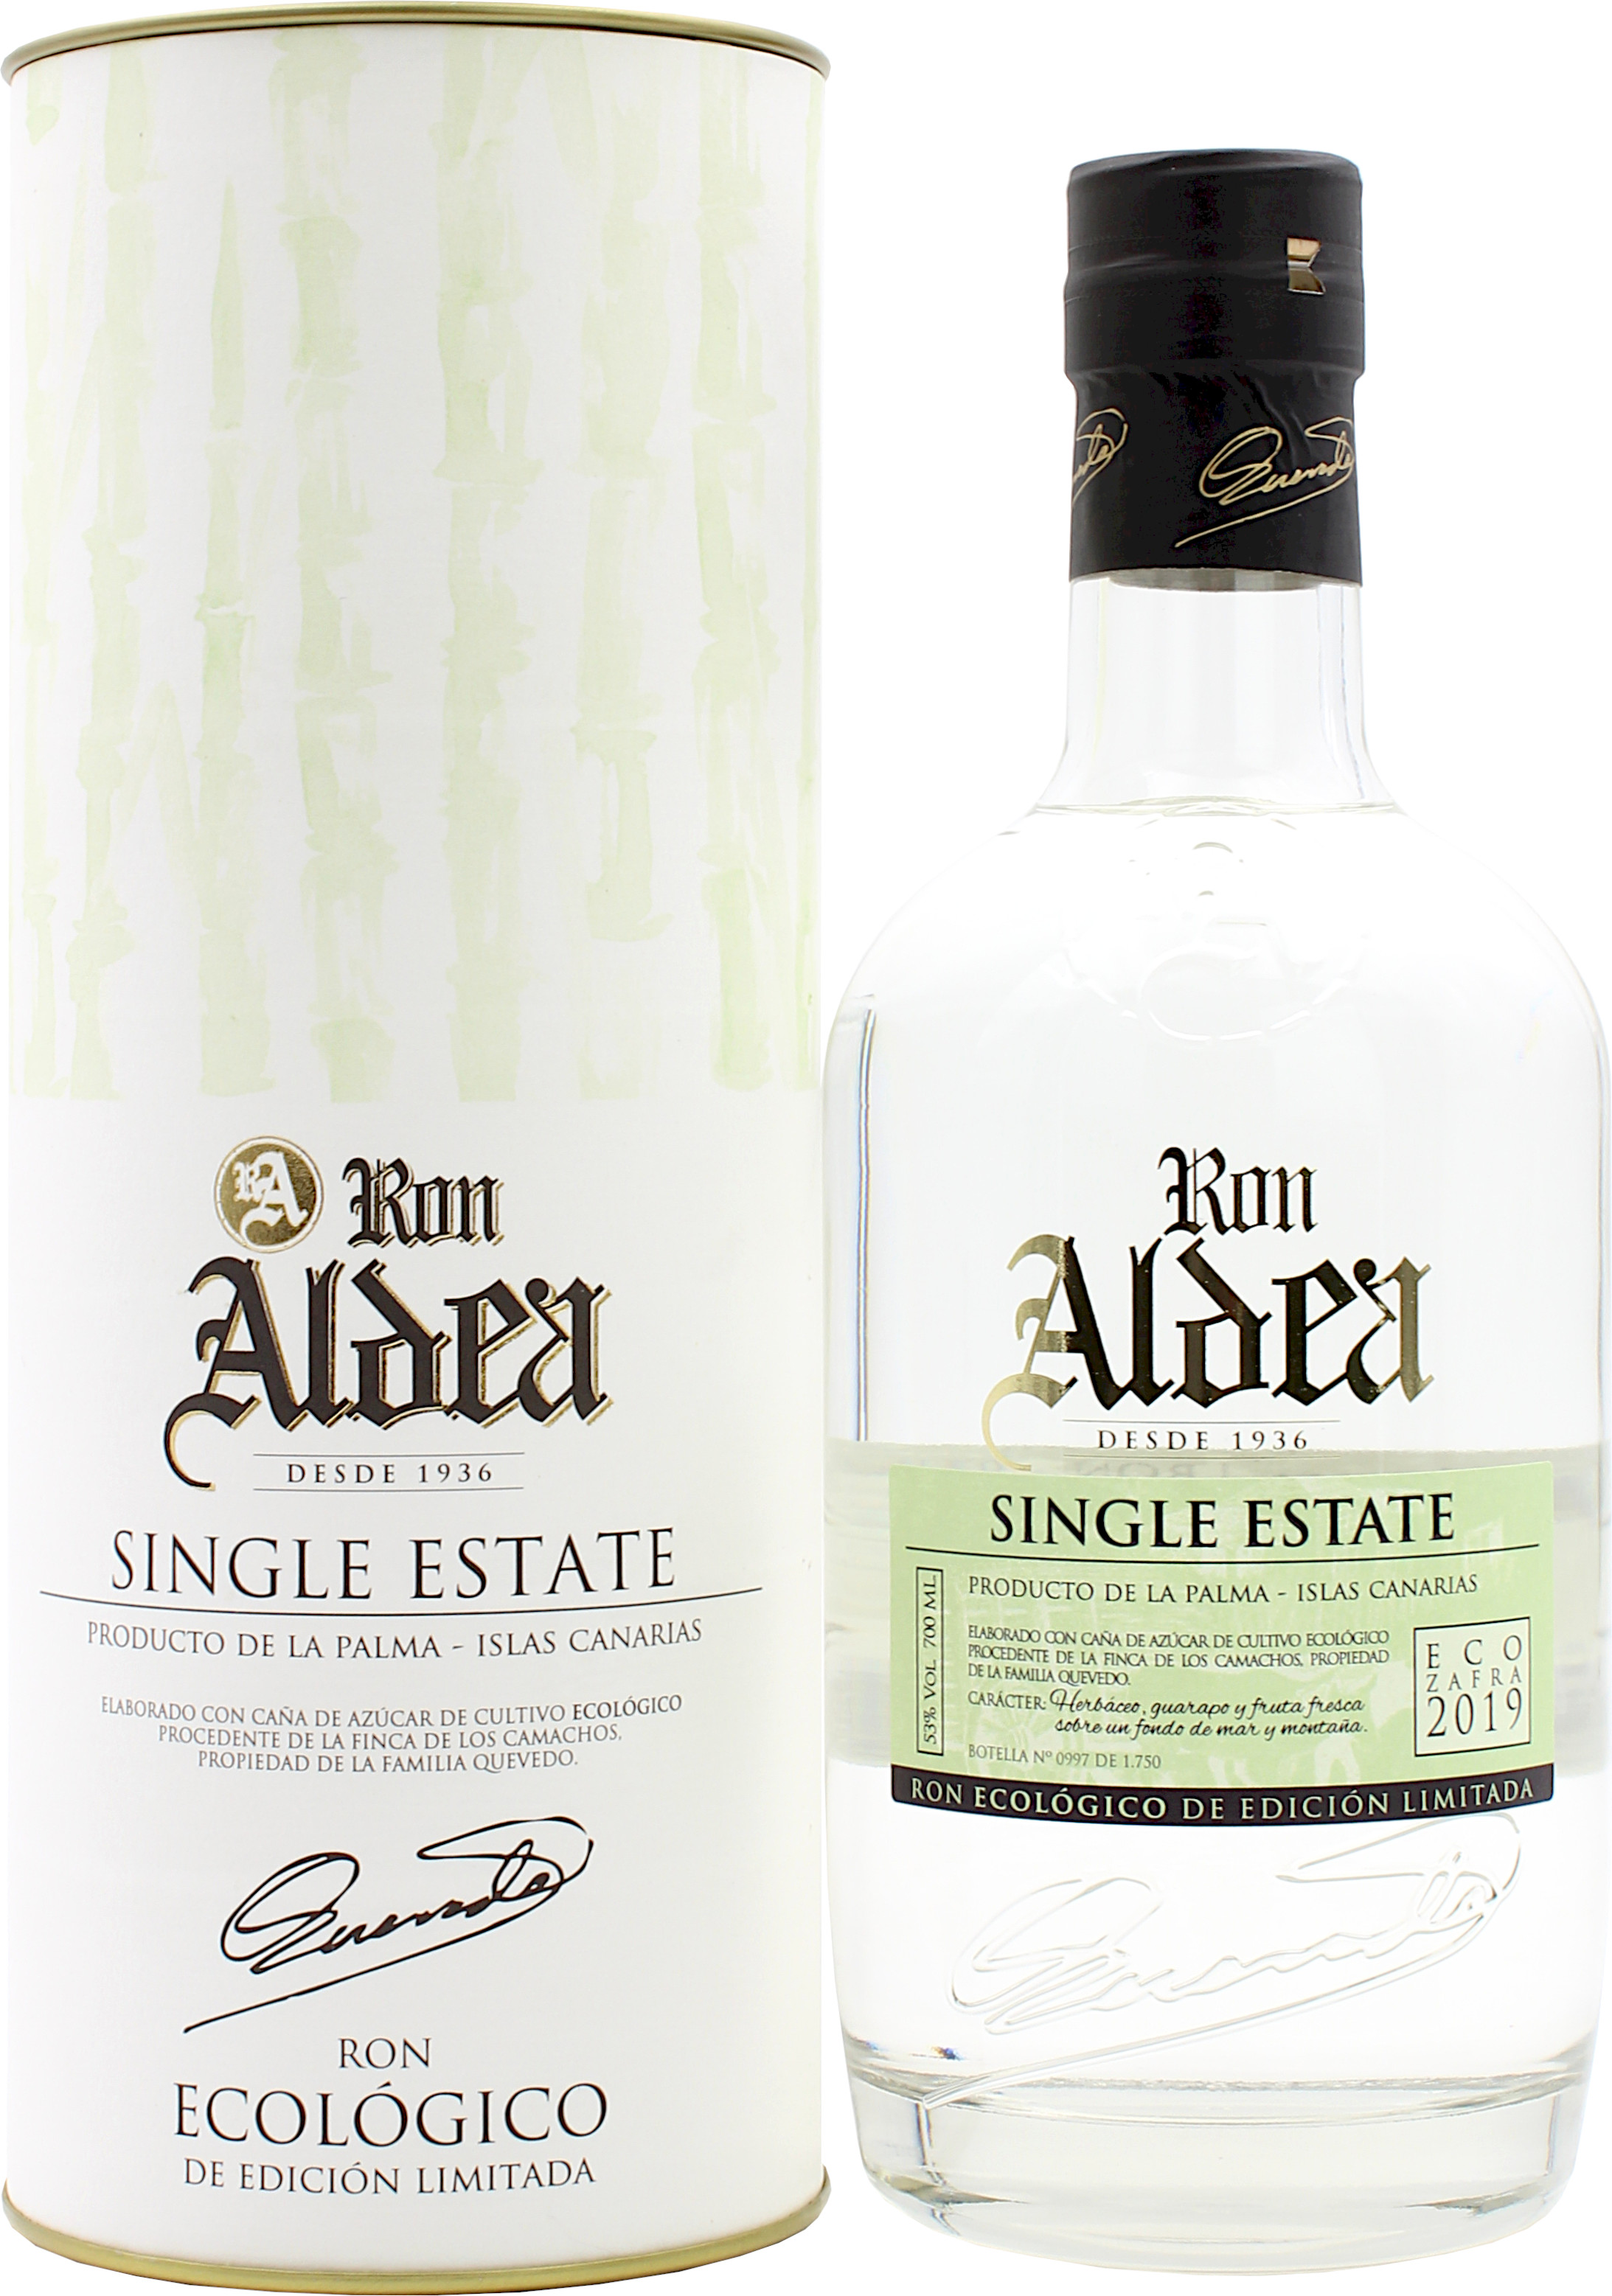 Ron Aldea Single Estate Ecologico 2019 53.0% 0,7l (bio)